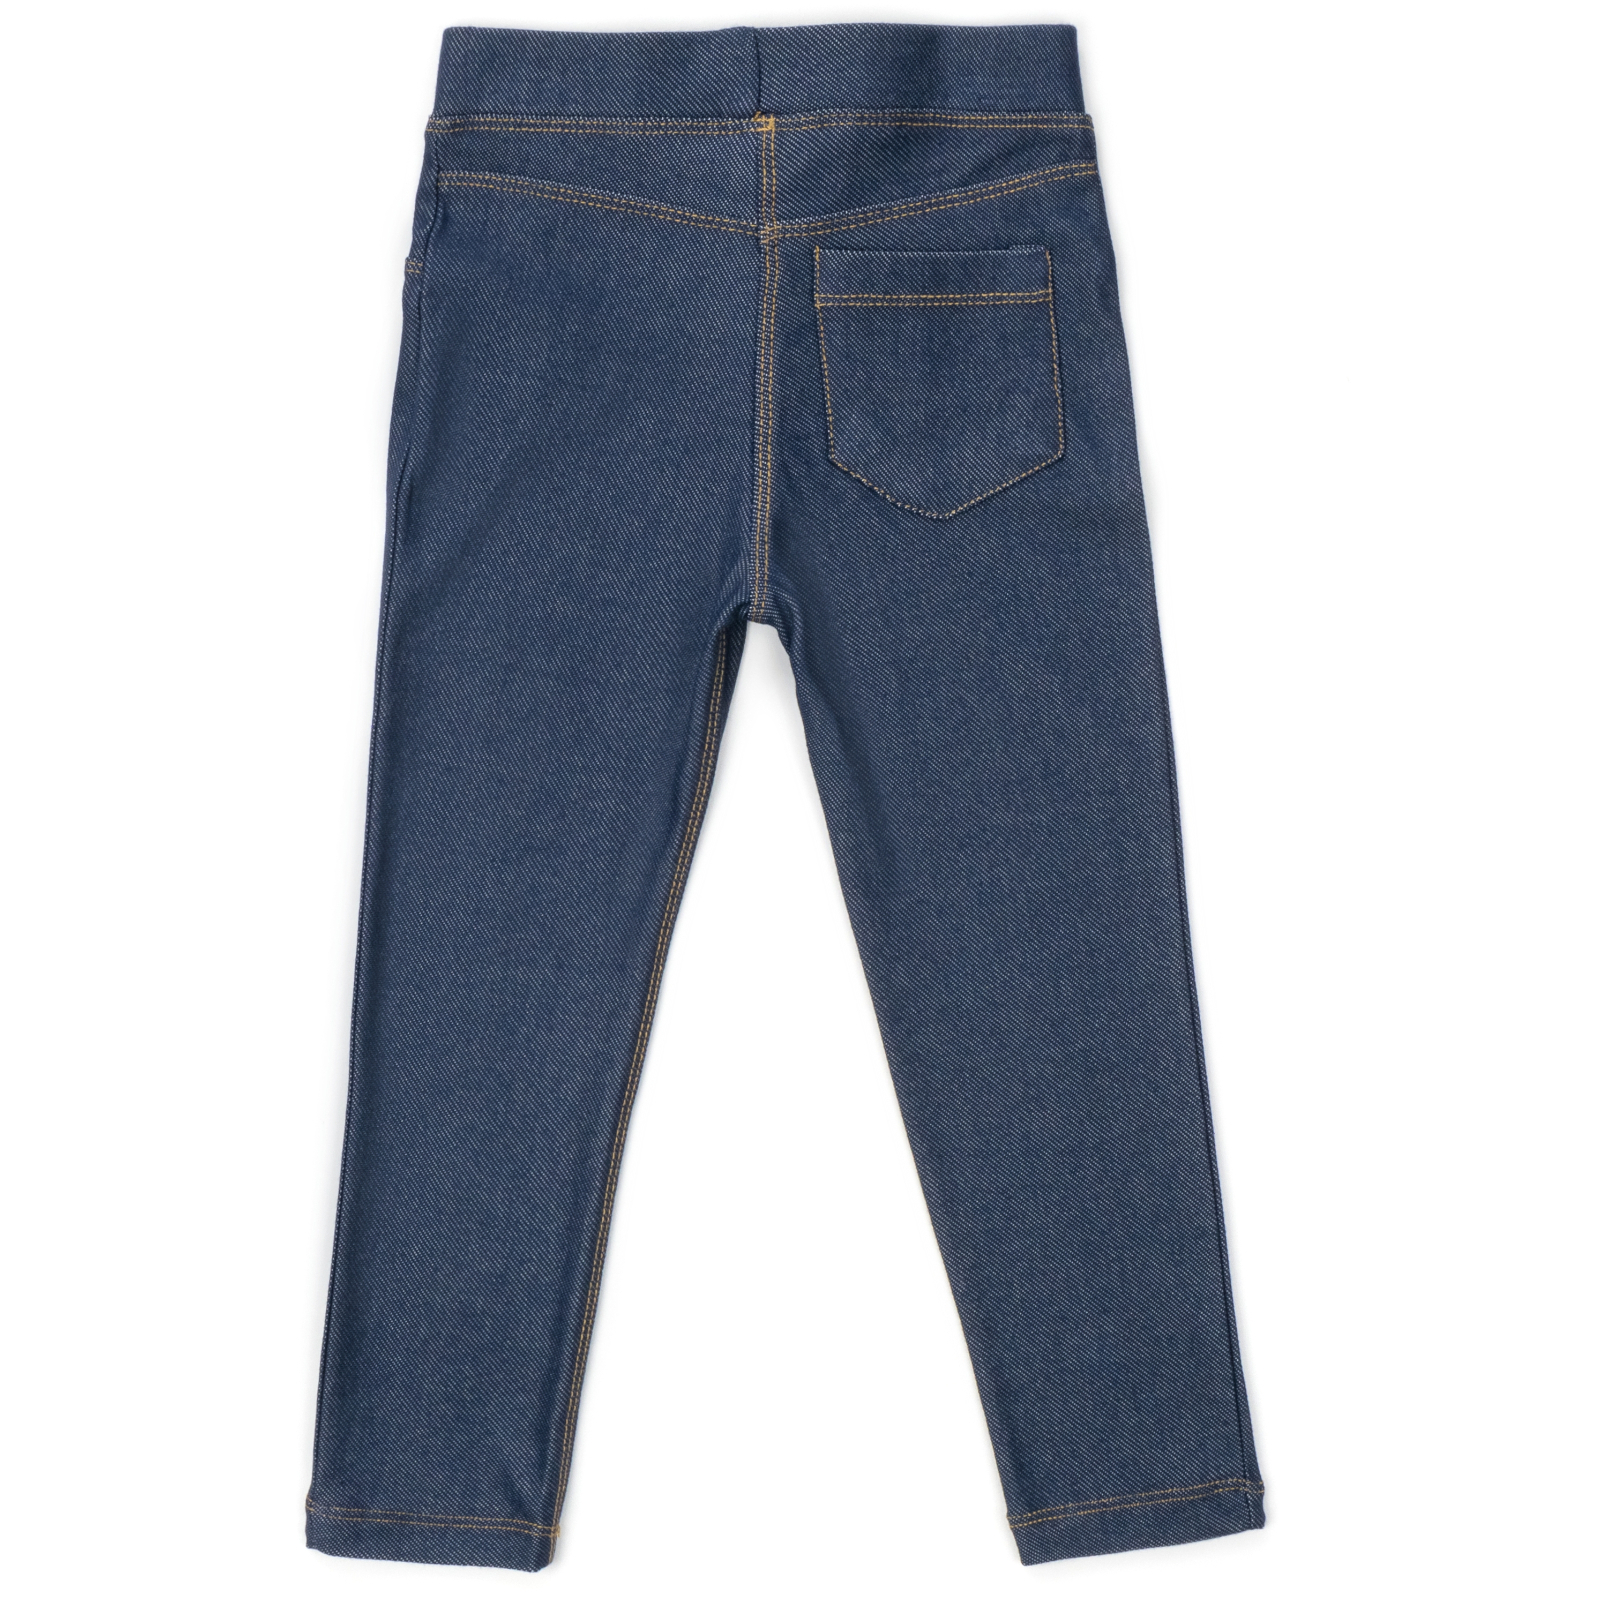 Лосины Breeze трикотажные (4415-116G-jeans) изображение 2